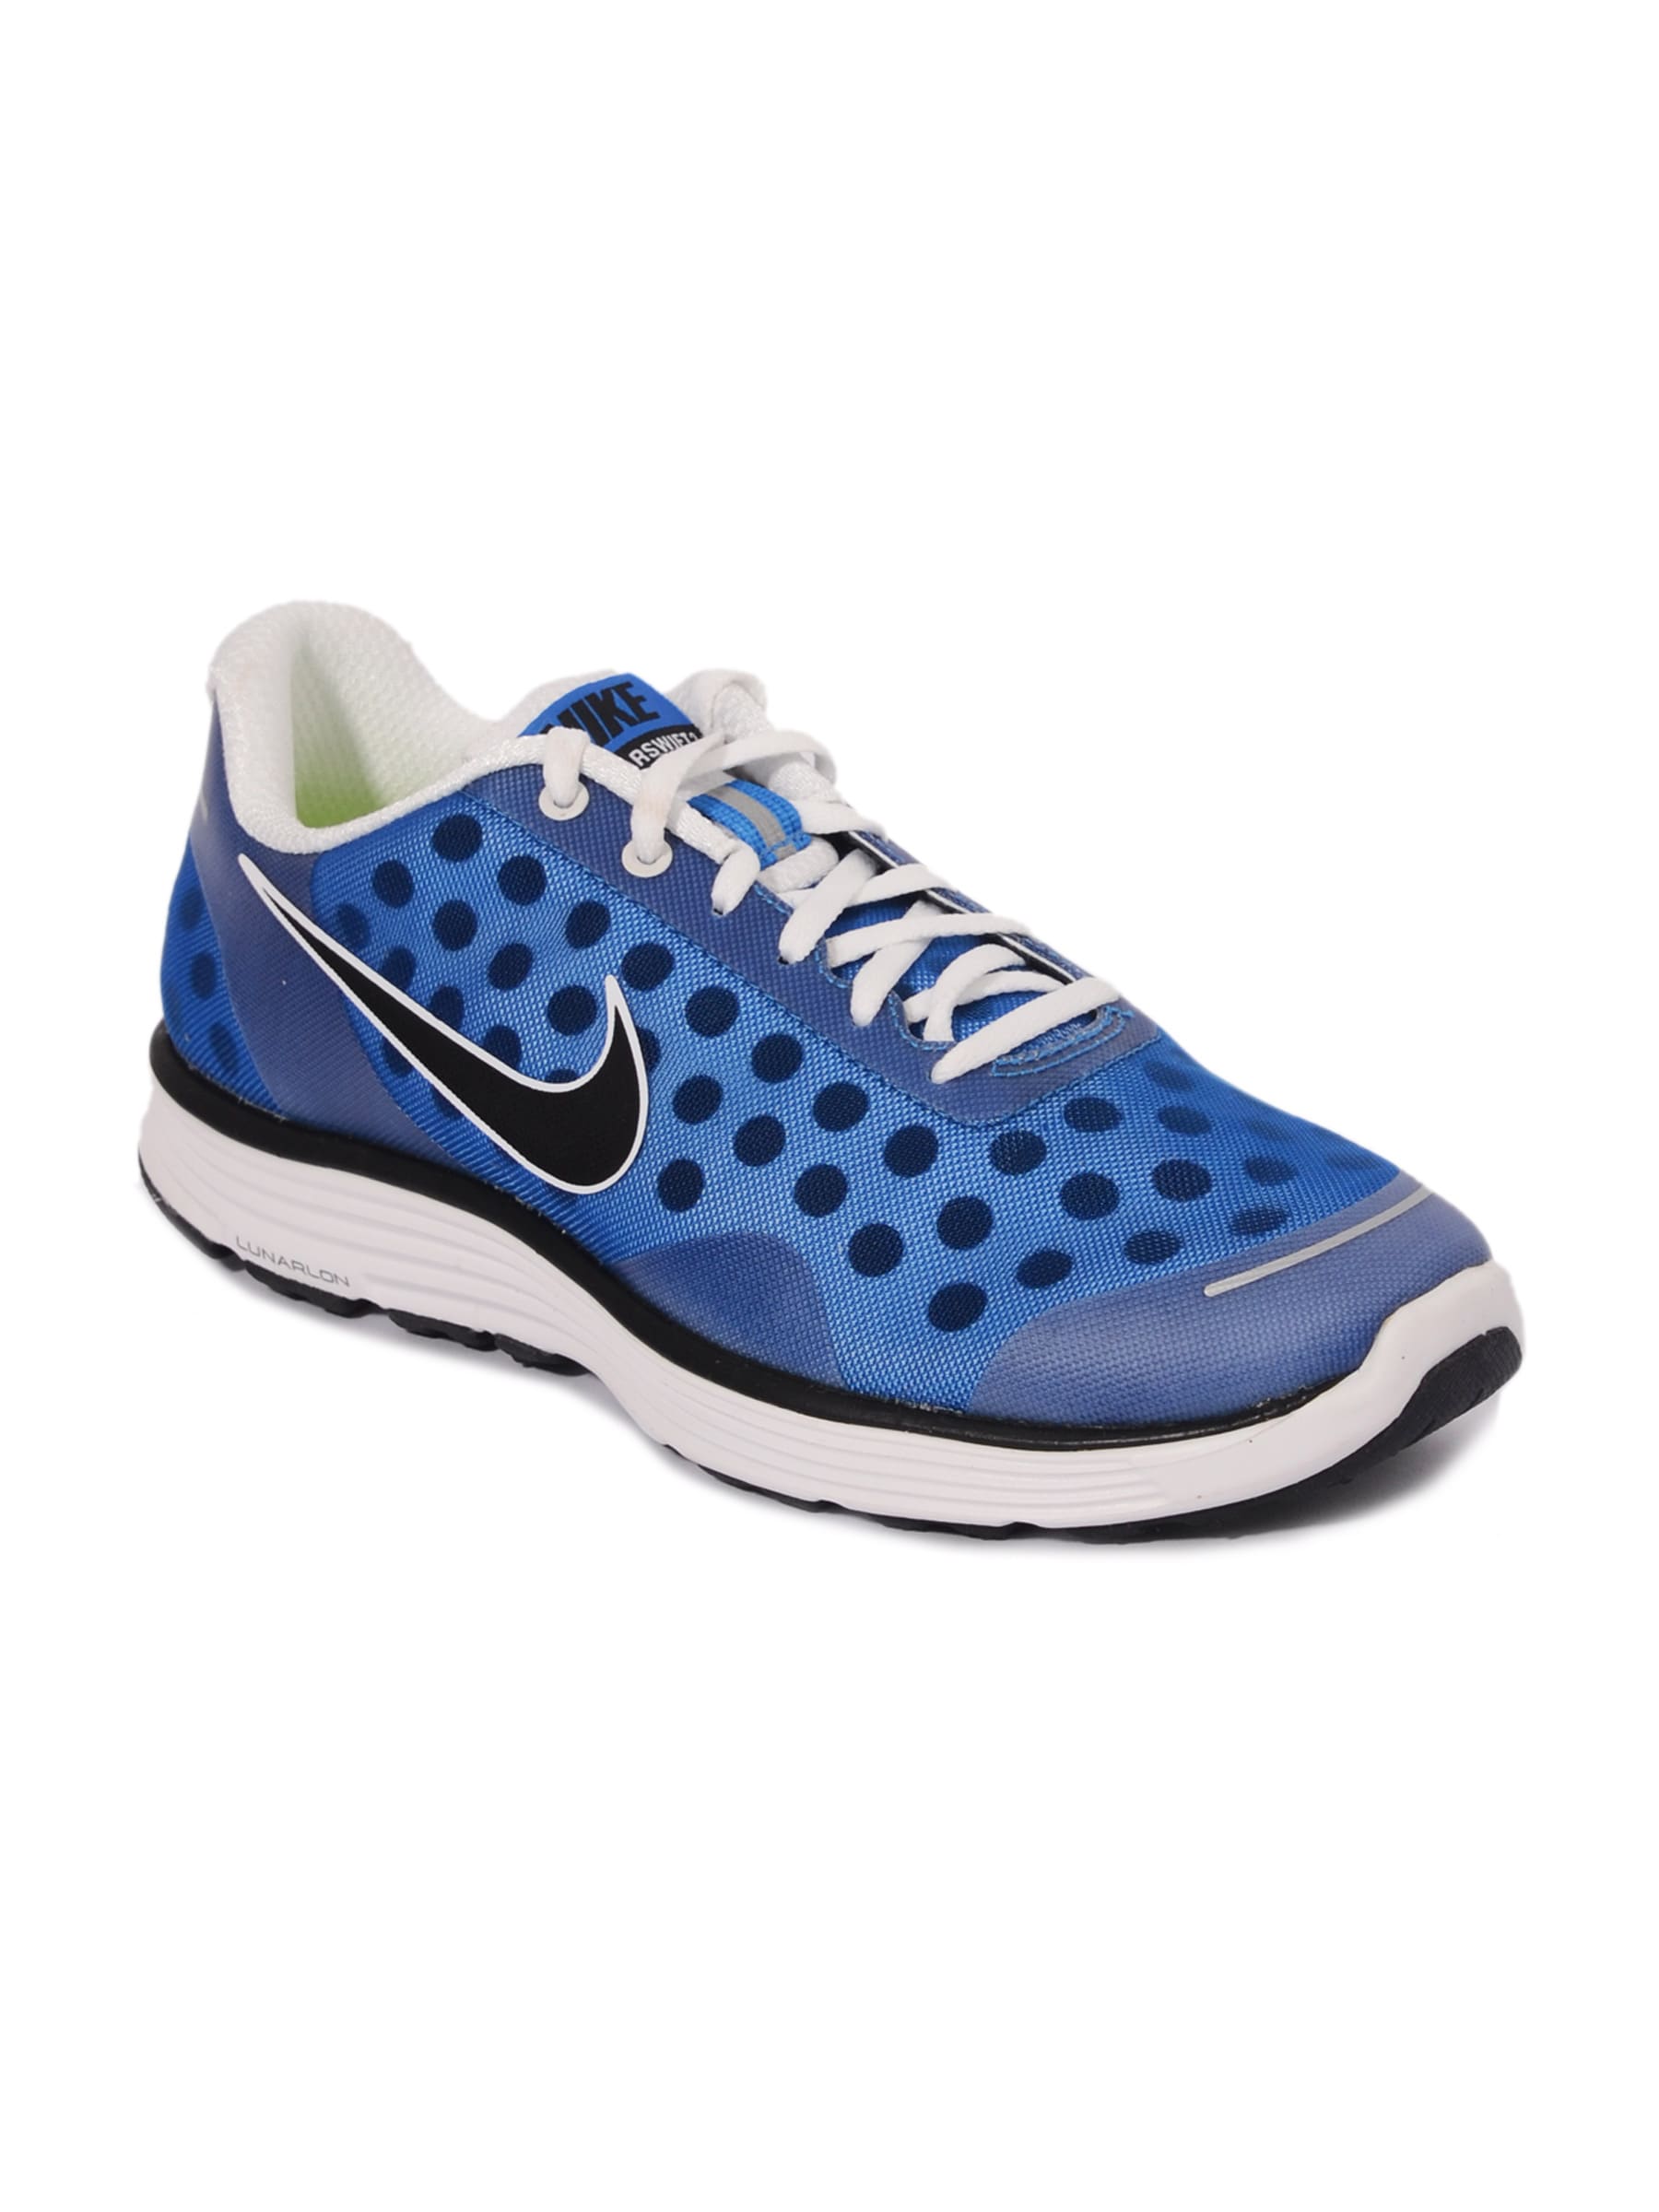 Nike Men's Lunarswift 2 Black Blue Shoe